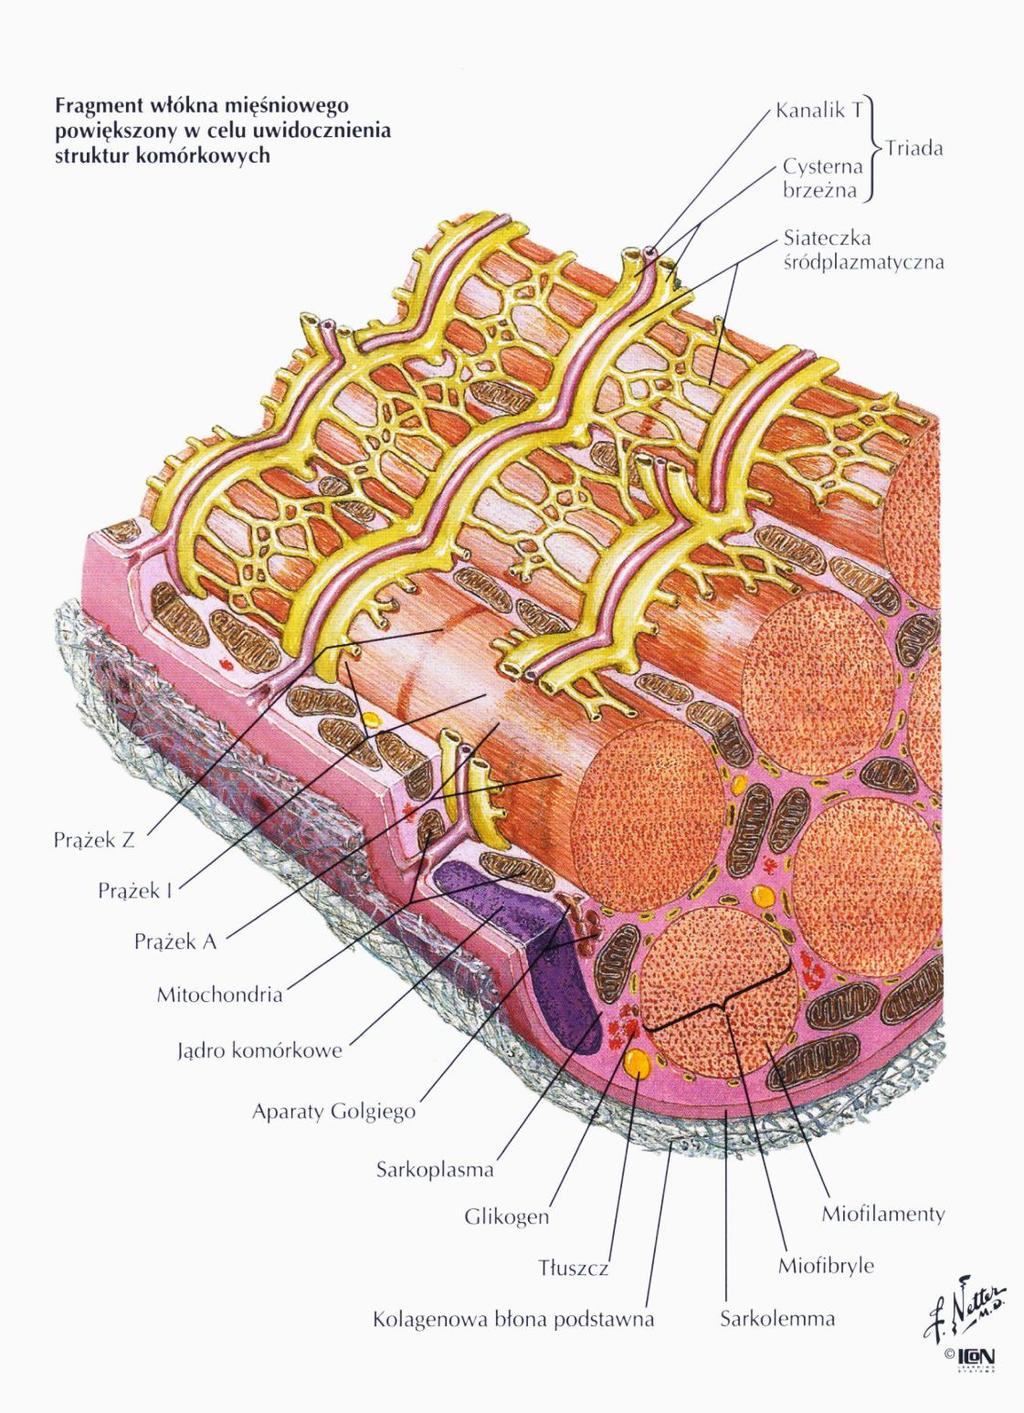 KANALIKI T - są to regularne wpuklenia błony komórkowej - wprowadzają środowisko zewnętrzne do środka komórki mięśniowej.